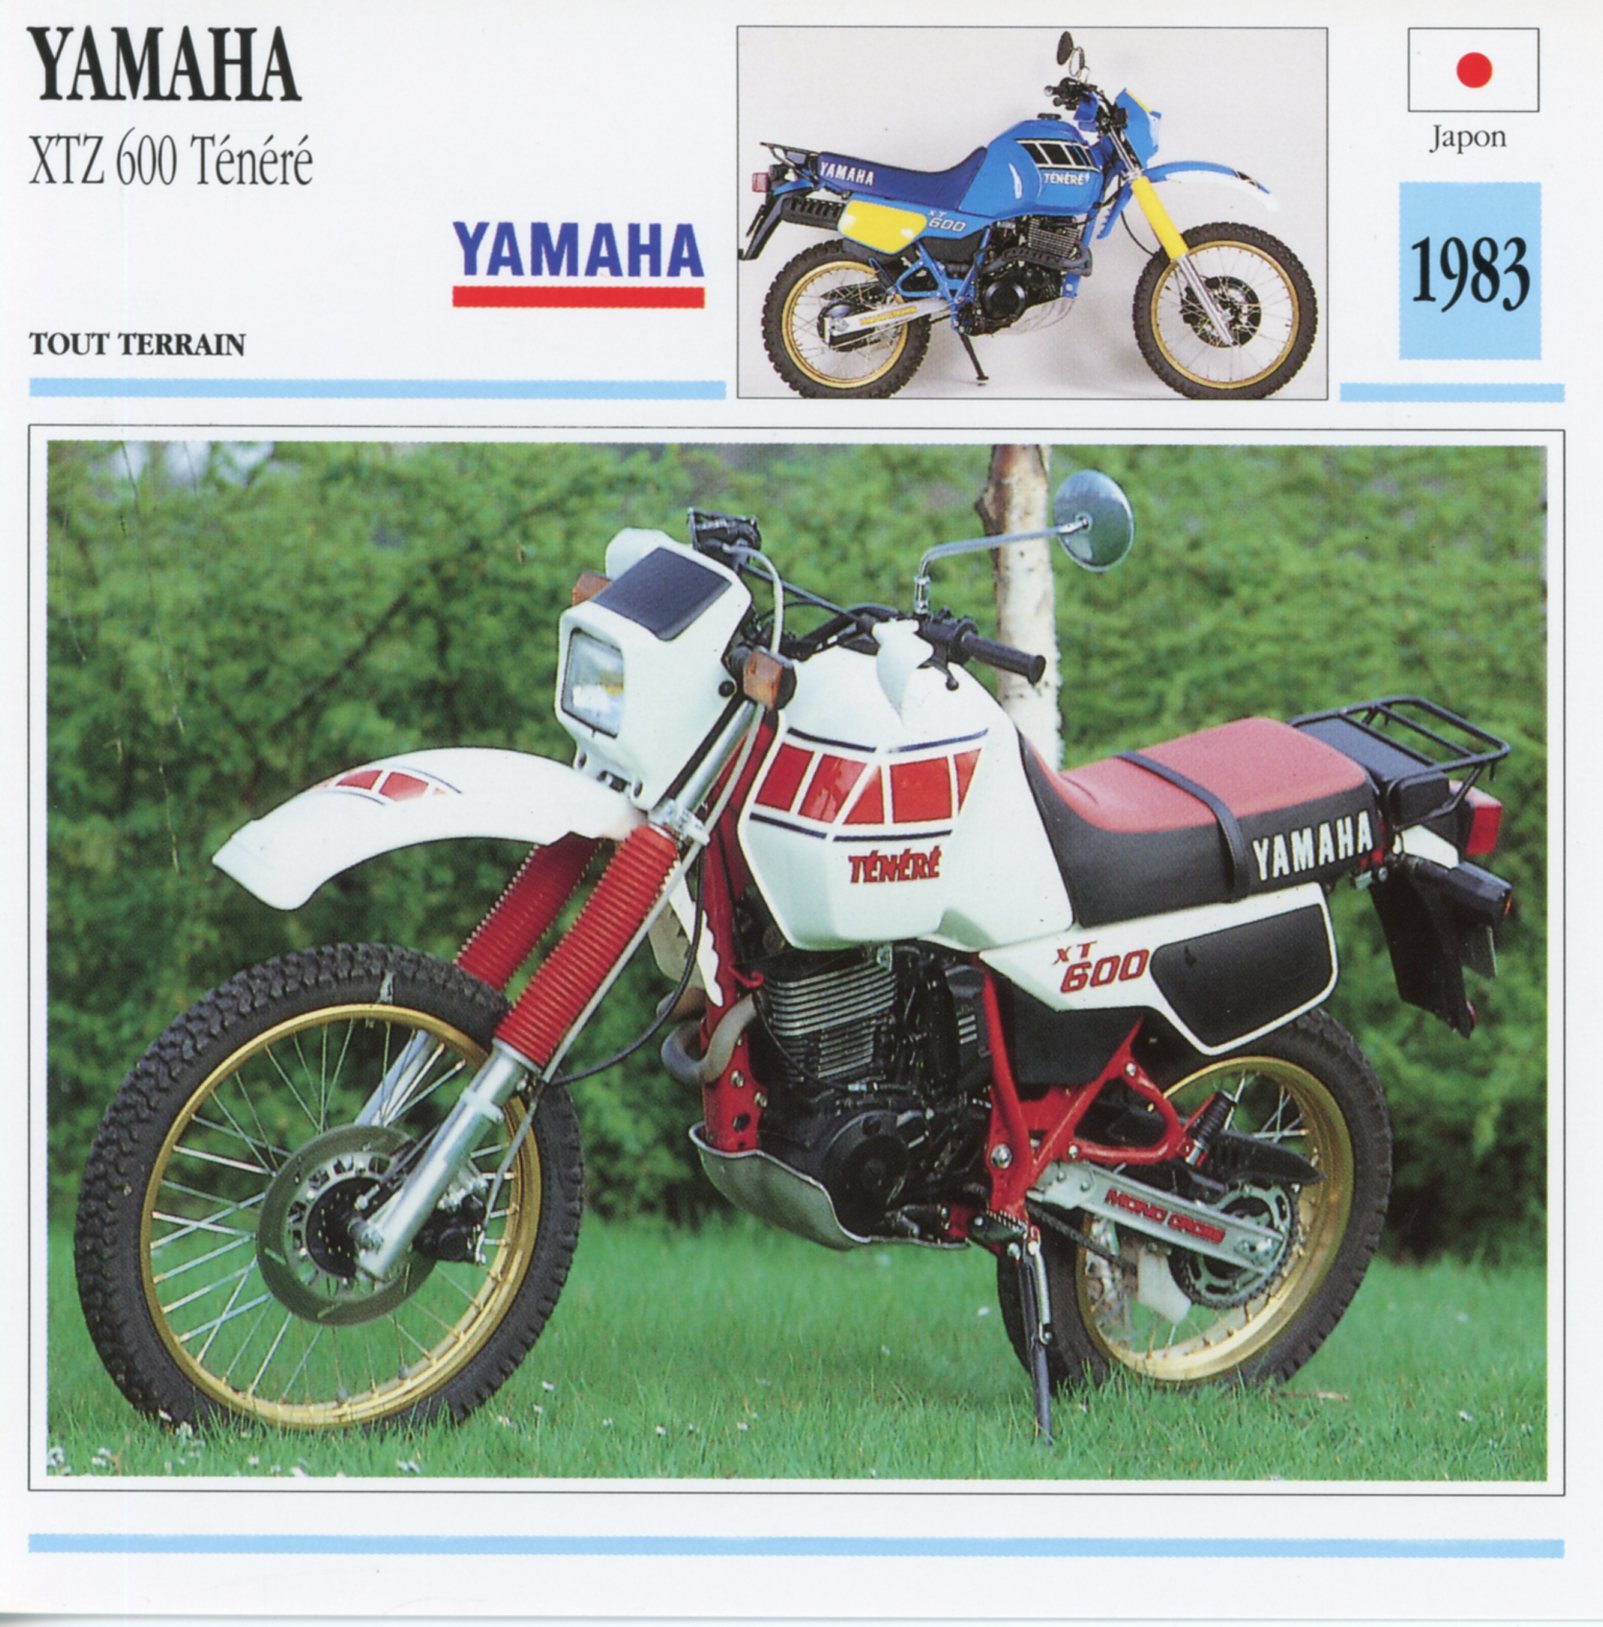 FICHE-MOTO-YAMAHA-XTZ-600-TÉNÉRÉ-lemasterbrockers-Fiche-Technique-Moto- Motorcycle-Card-1983